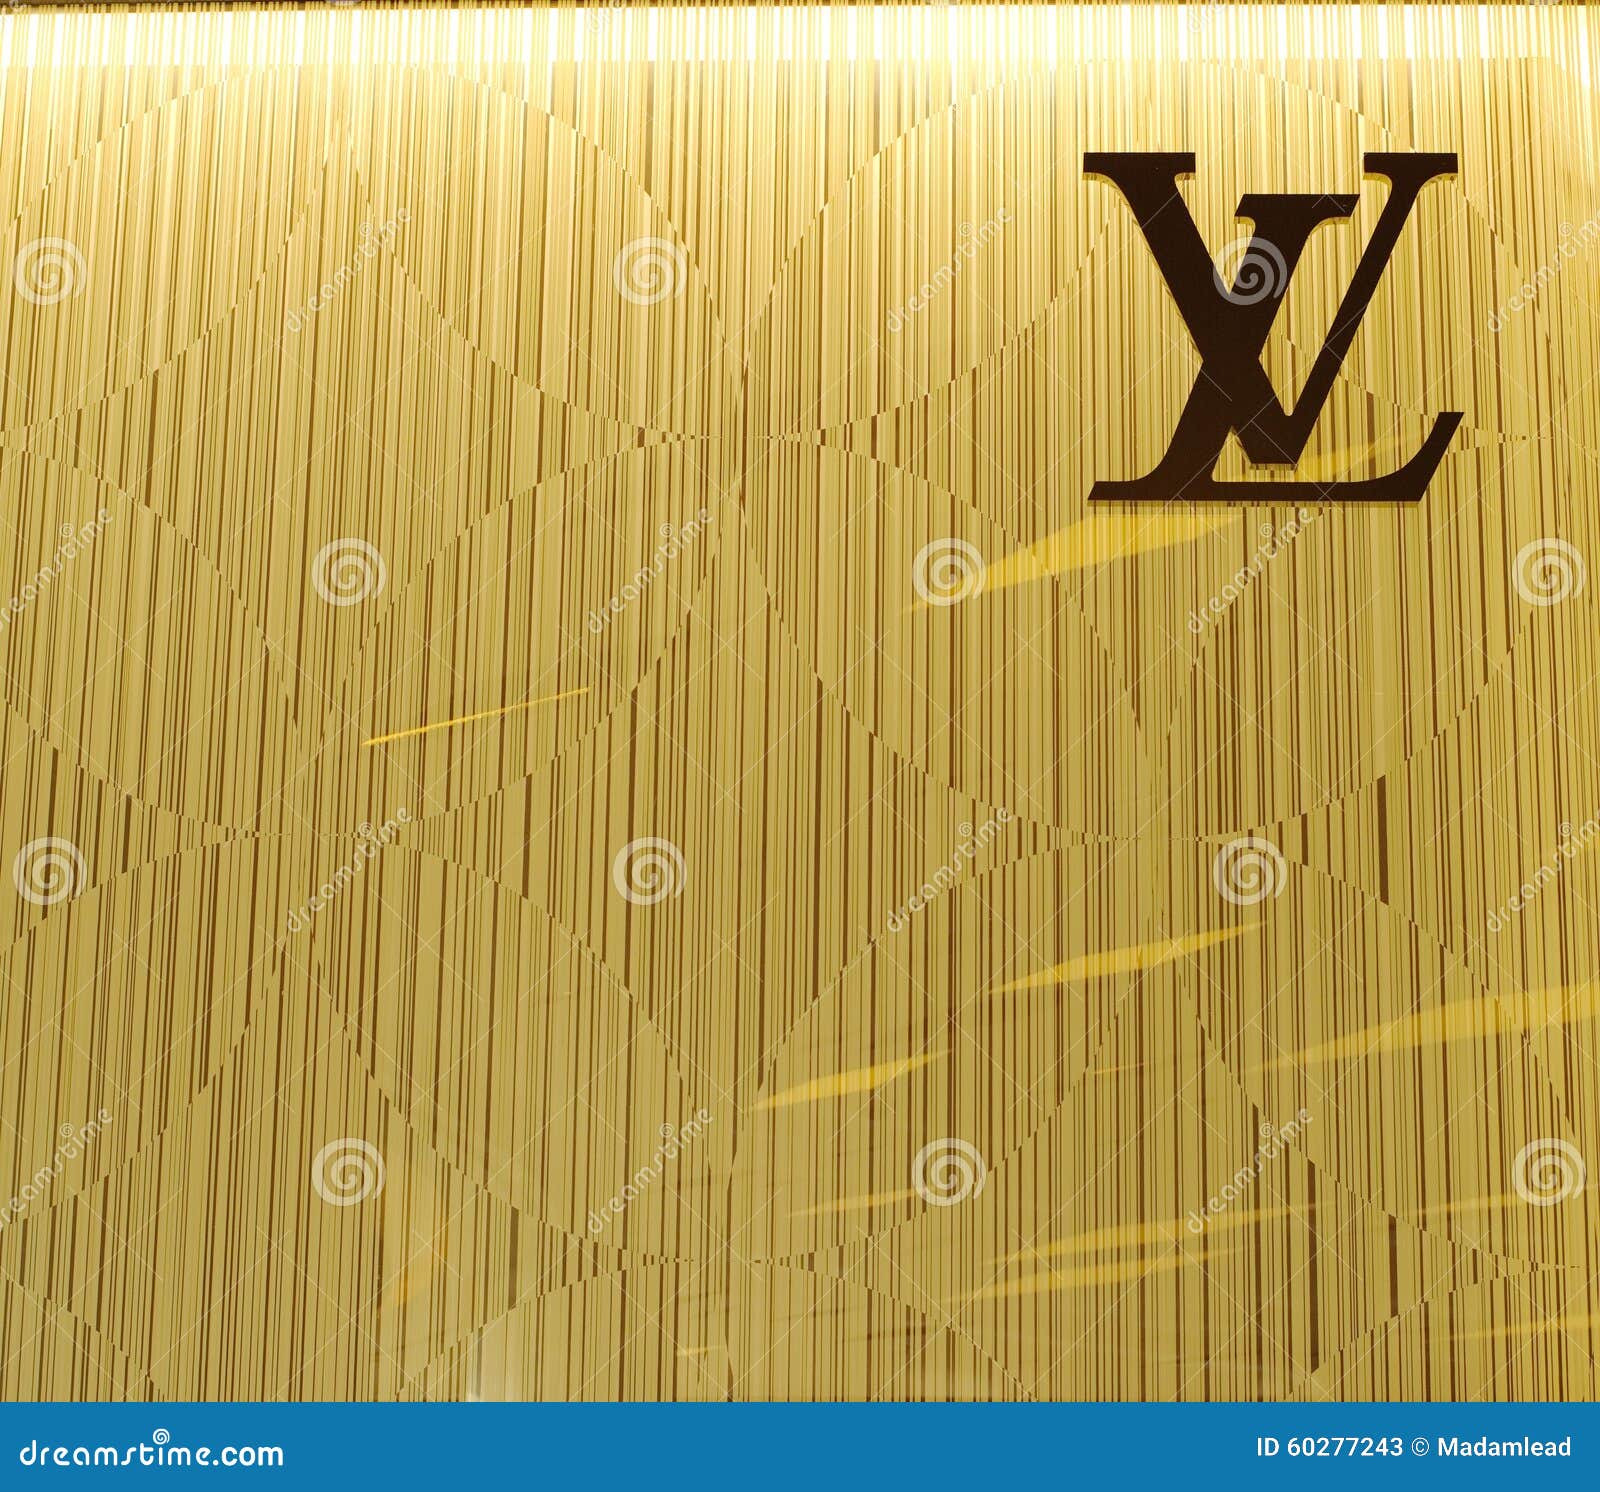 Kyiv, Ukraine. March 3, 2020. Louis Vuitton famous monogram